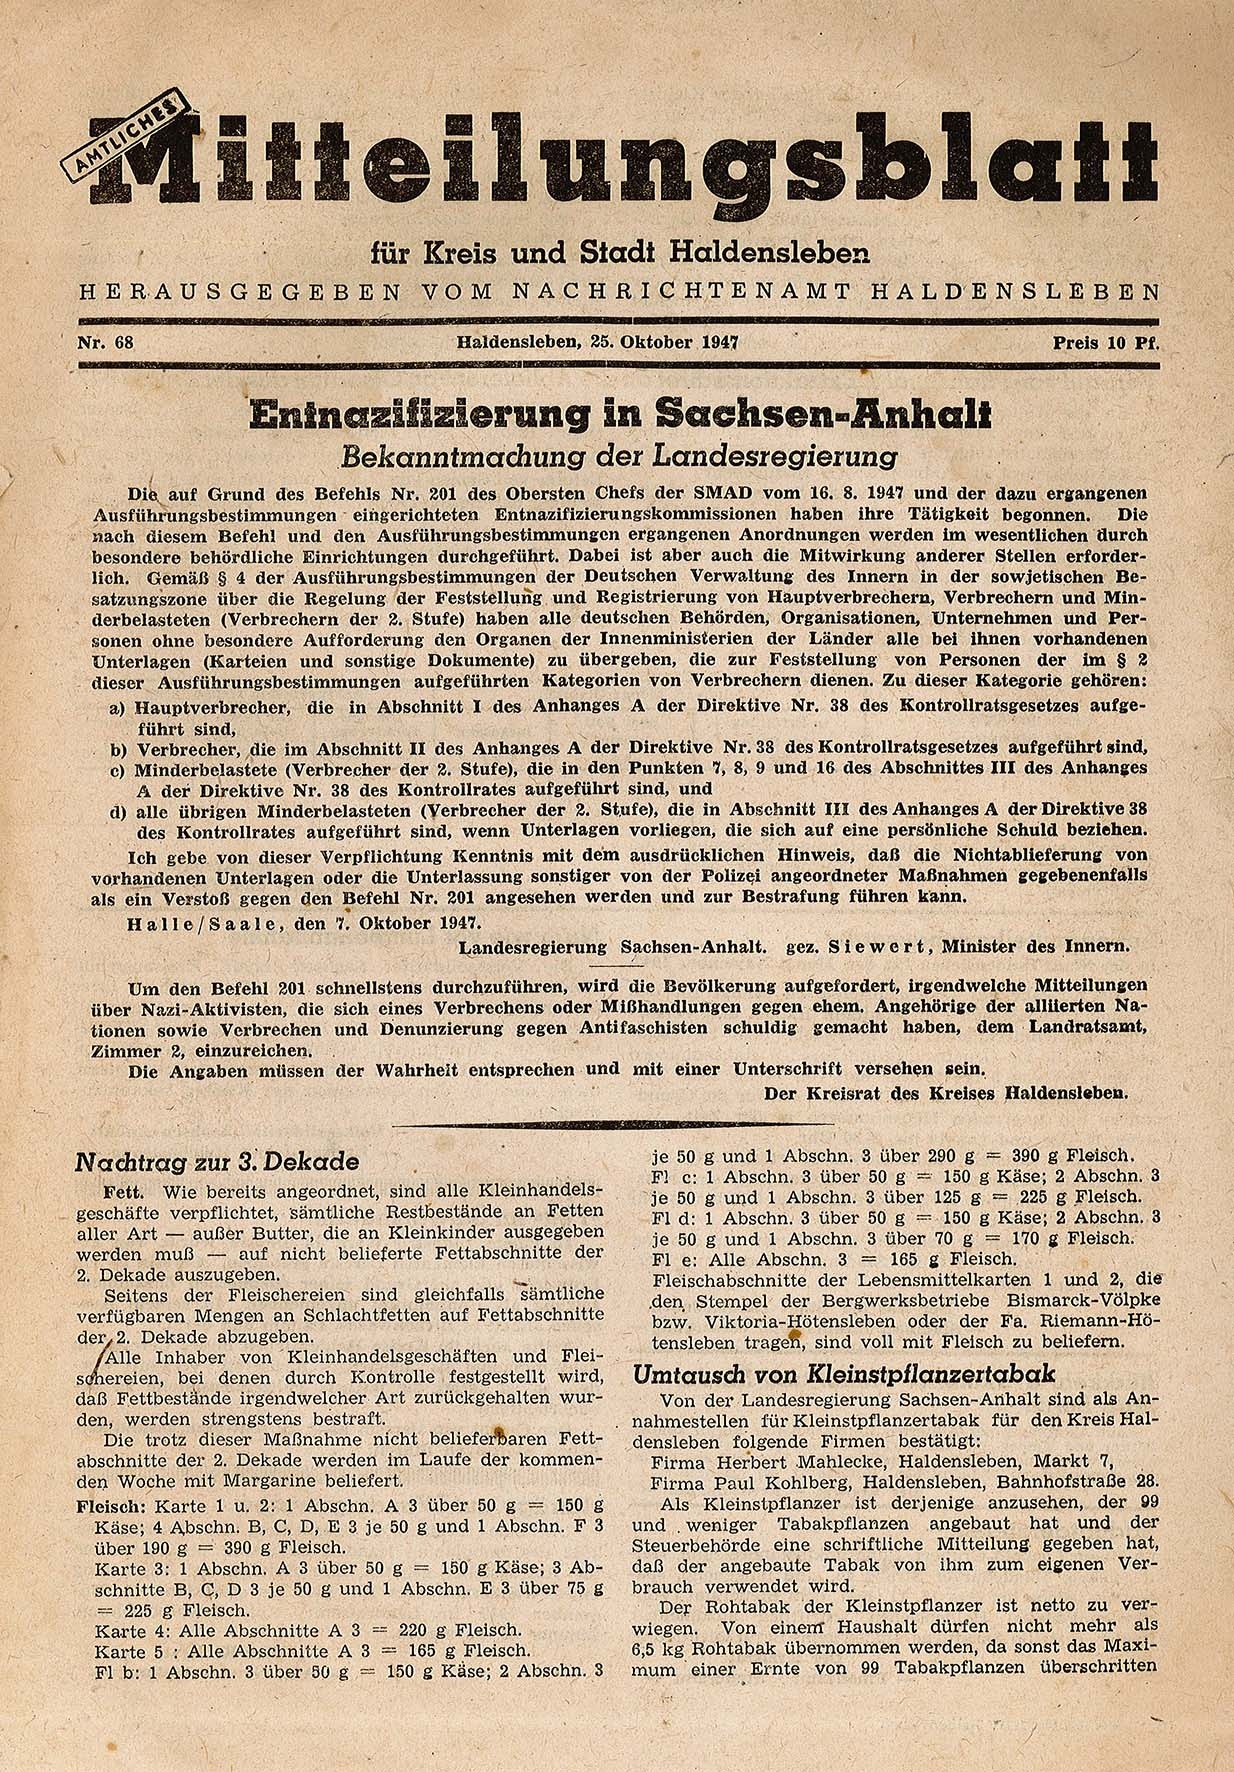 Amtliches Mitteilungsblatt für Kreis und Stadt Haldensleben Nr. 68, 25. Oktober 1947 (Museum Wolmirstedt RR-F)